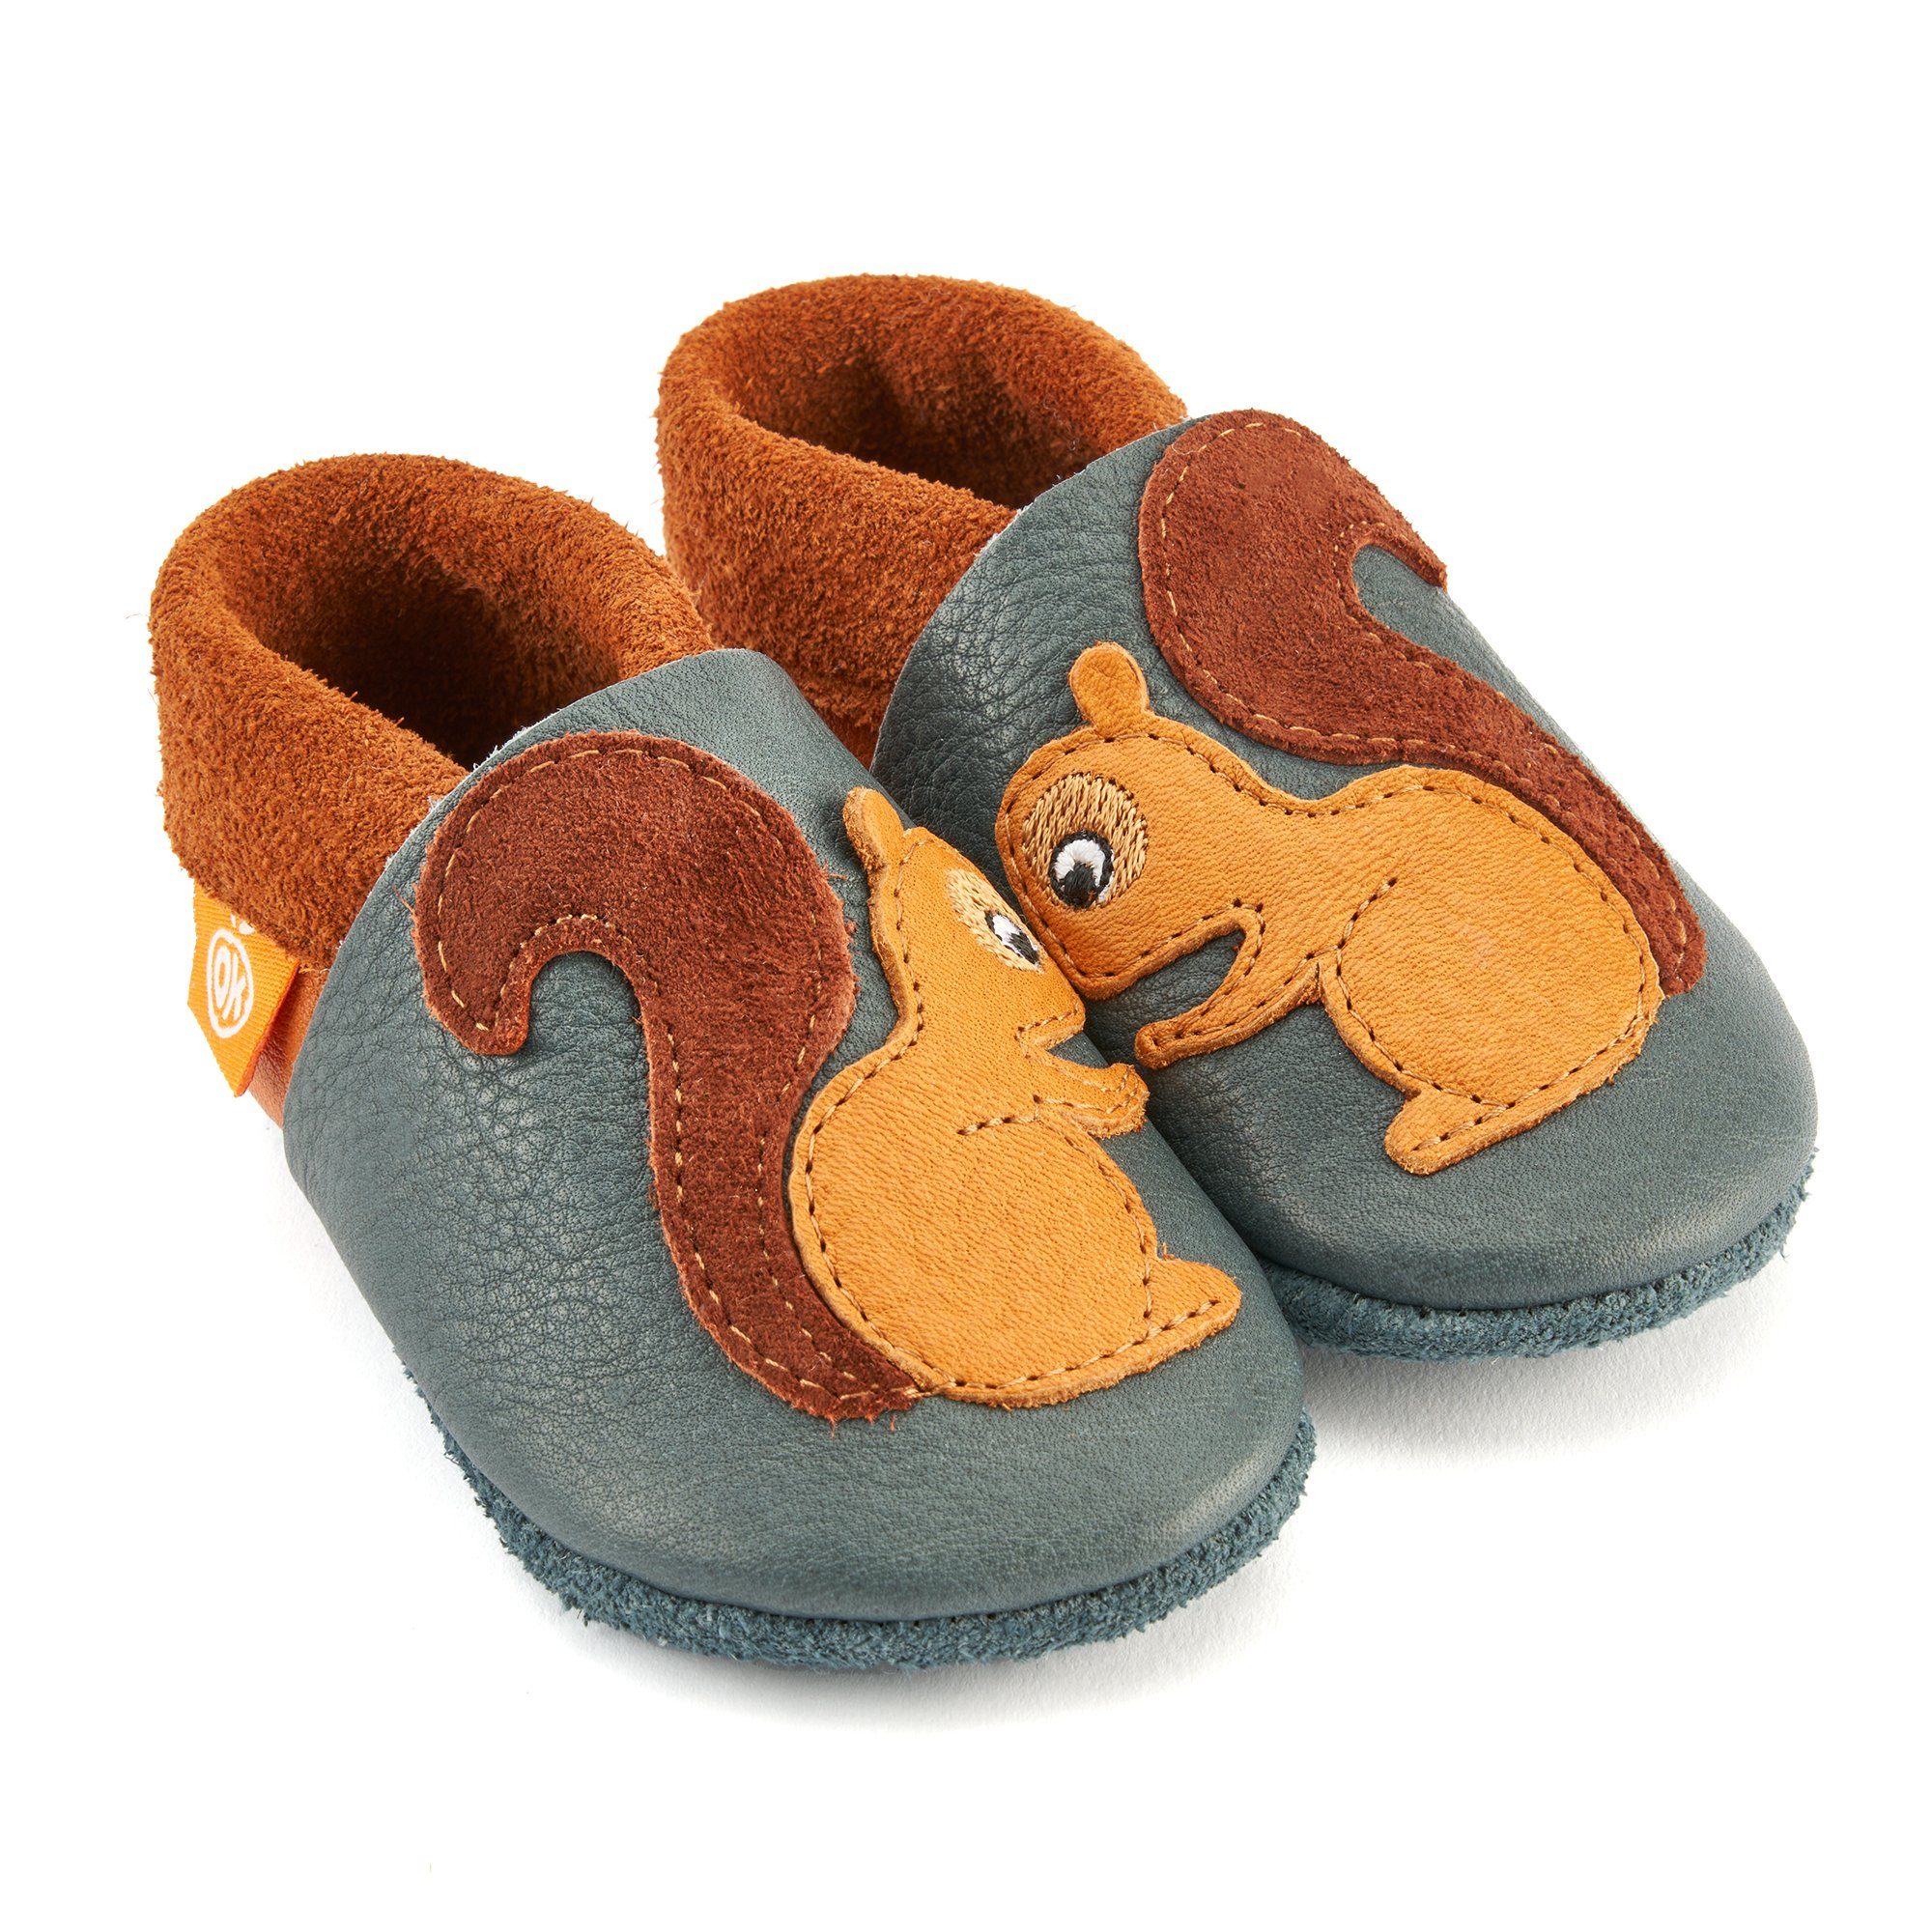 Orangenkinder® Knusper das Eichhörnchen Baby Krabbelschuh 100% pflanzlich gegerbtes Leder, Made in Germany, Atmungsaktiv